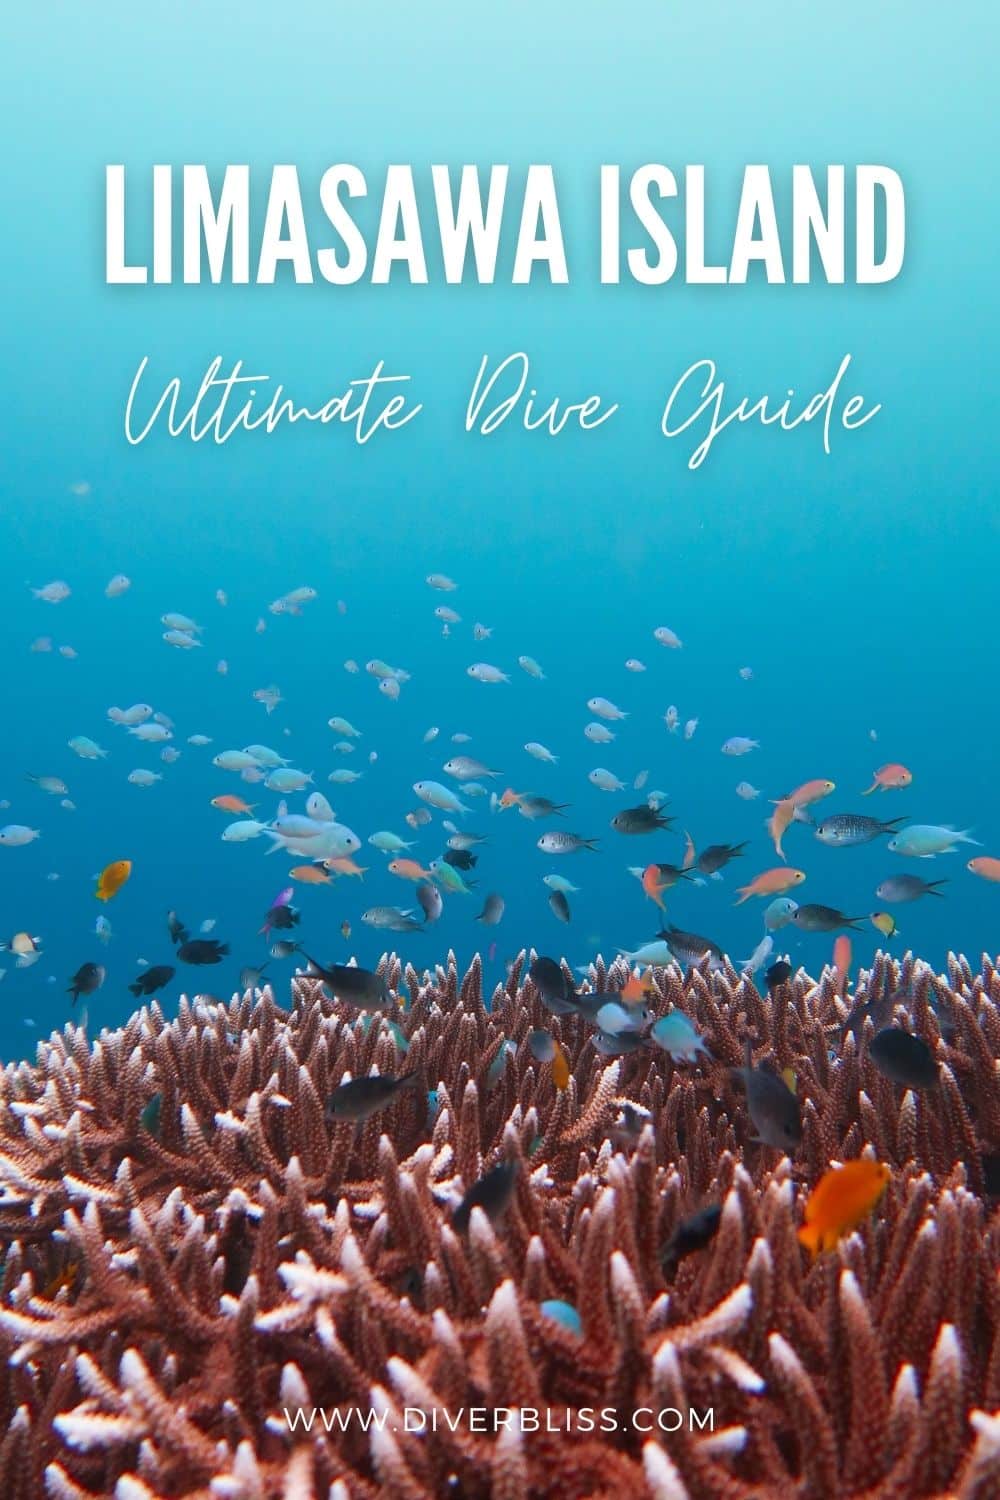 Limasawa Island ultimate dive guide